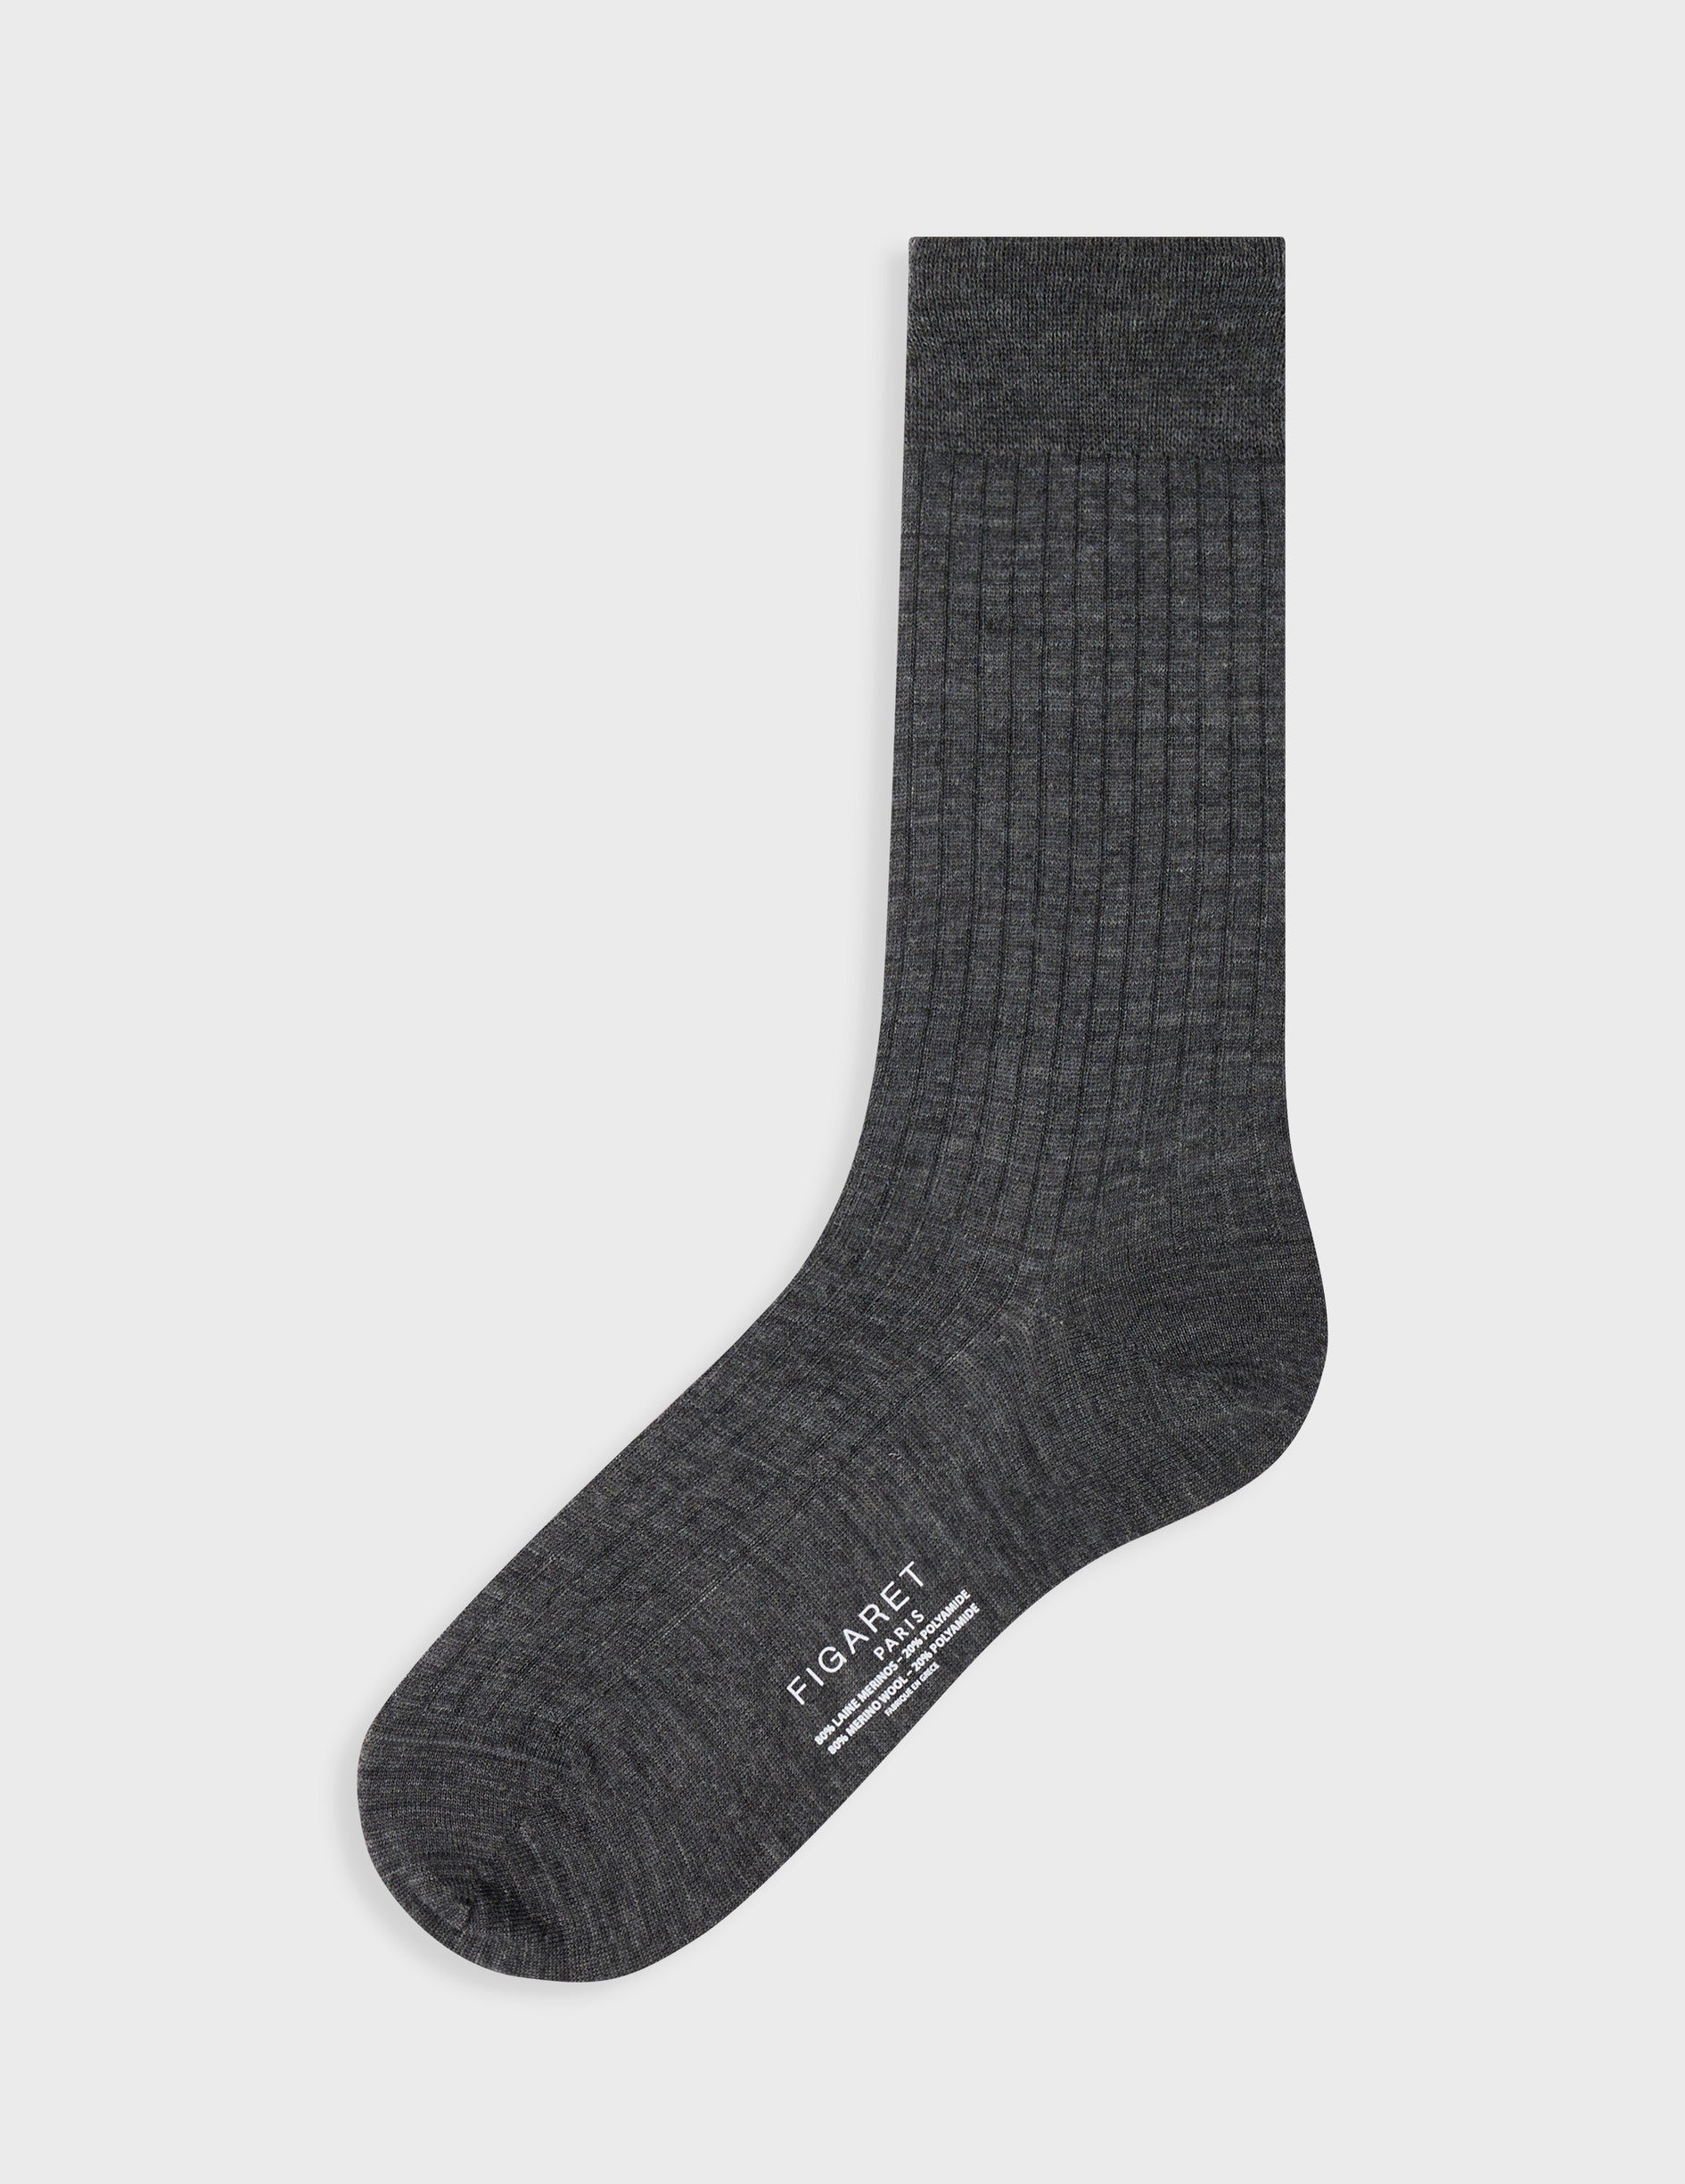 Grey wool socks